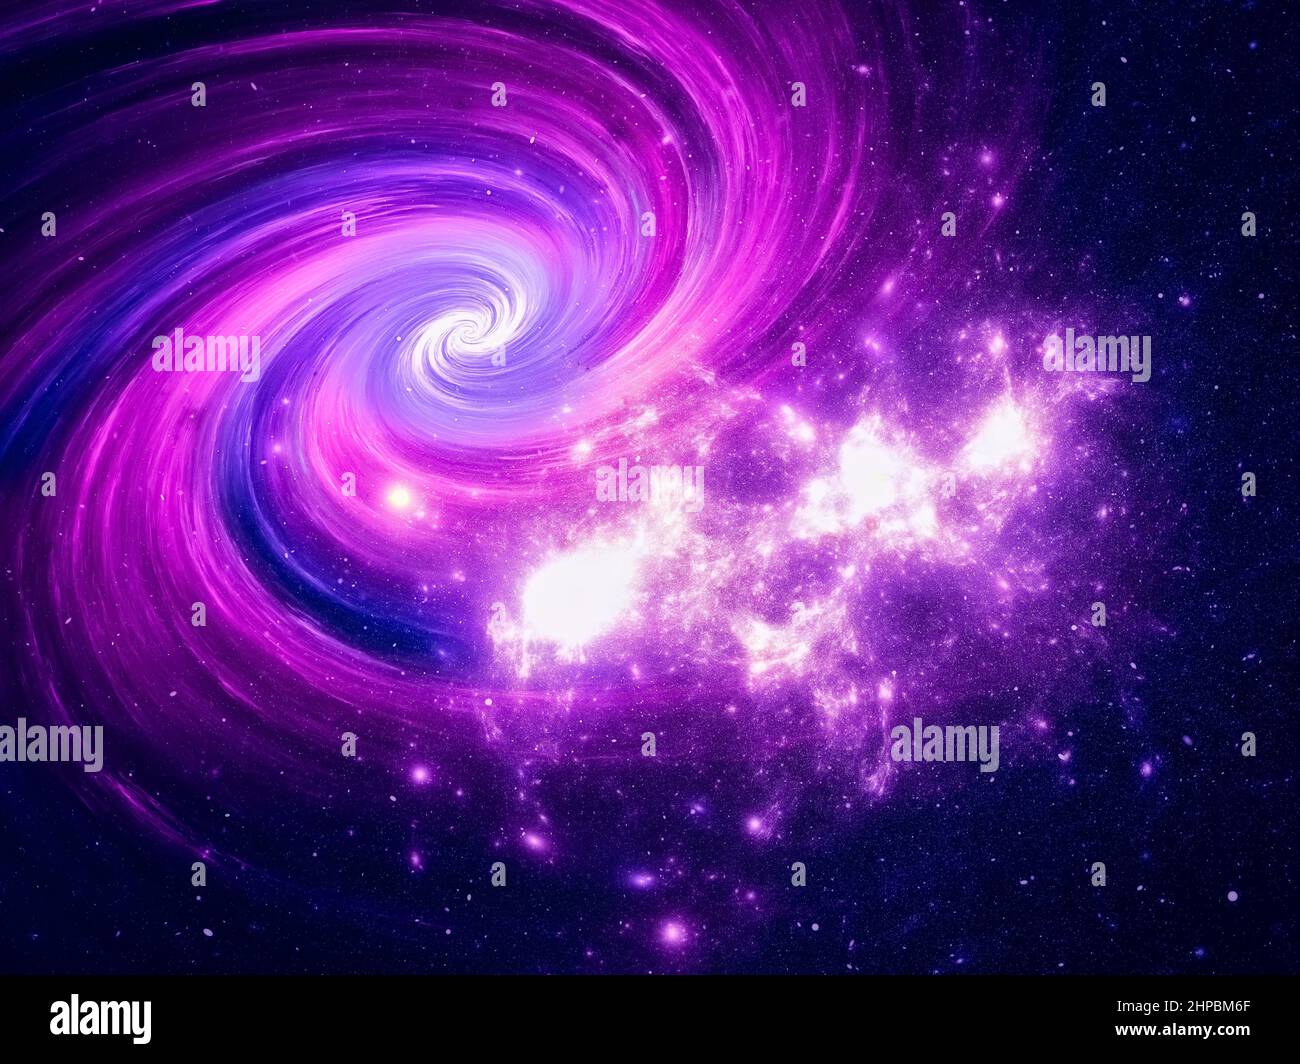 Galaxie spirale et groupes d'étoiles - résumé 3D illustration - thème de l'espace Banque D'Images